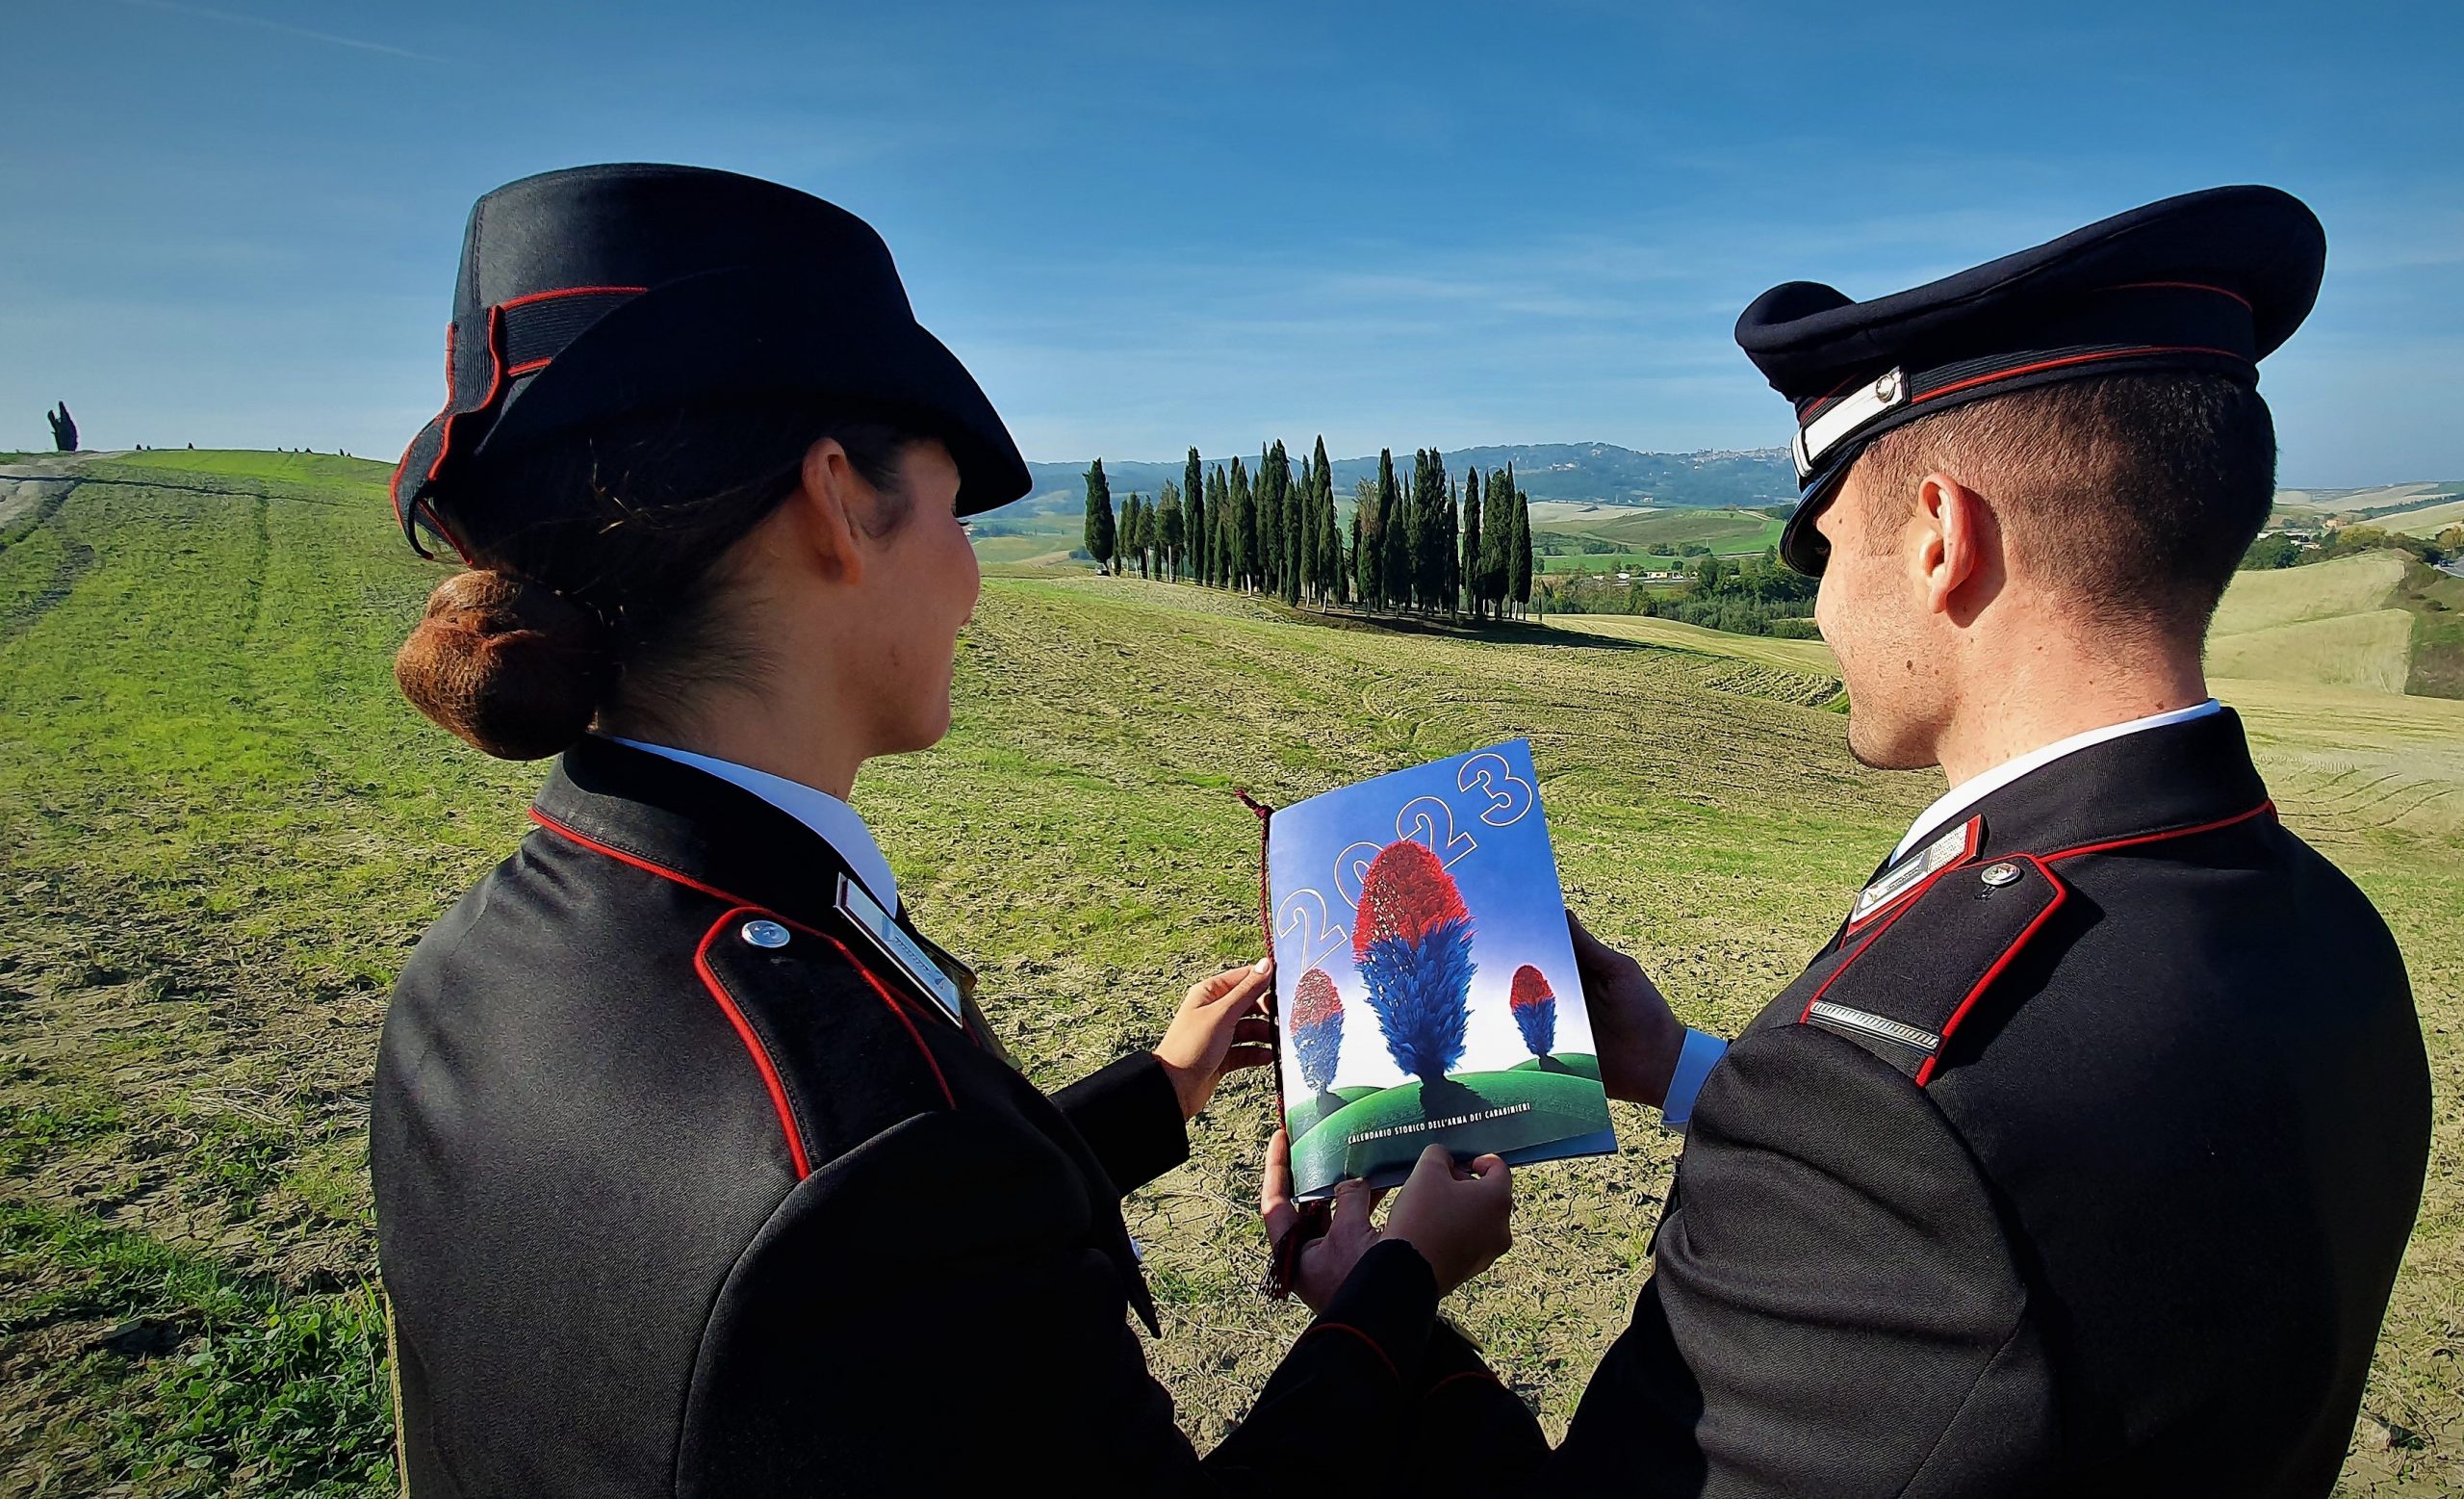 Presentato il Calendario Storico dell'Arma dei Carabinieri 2023